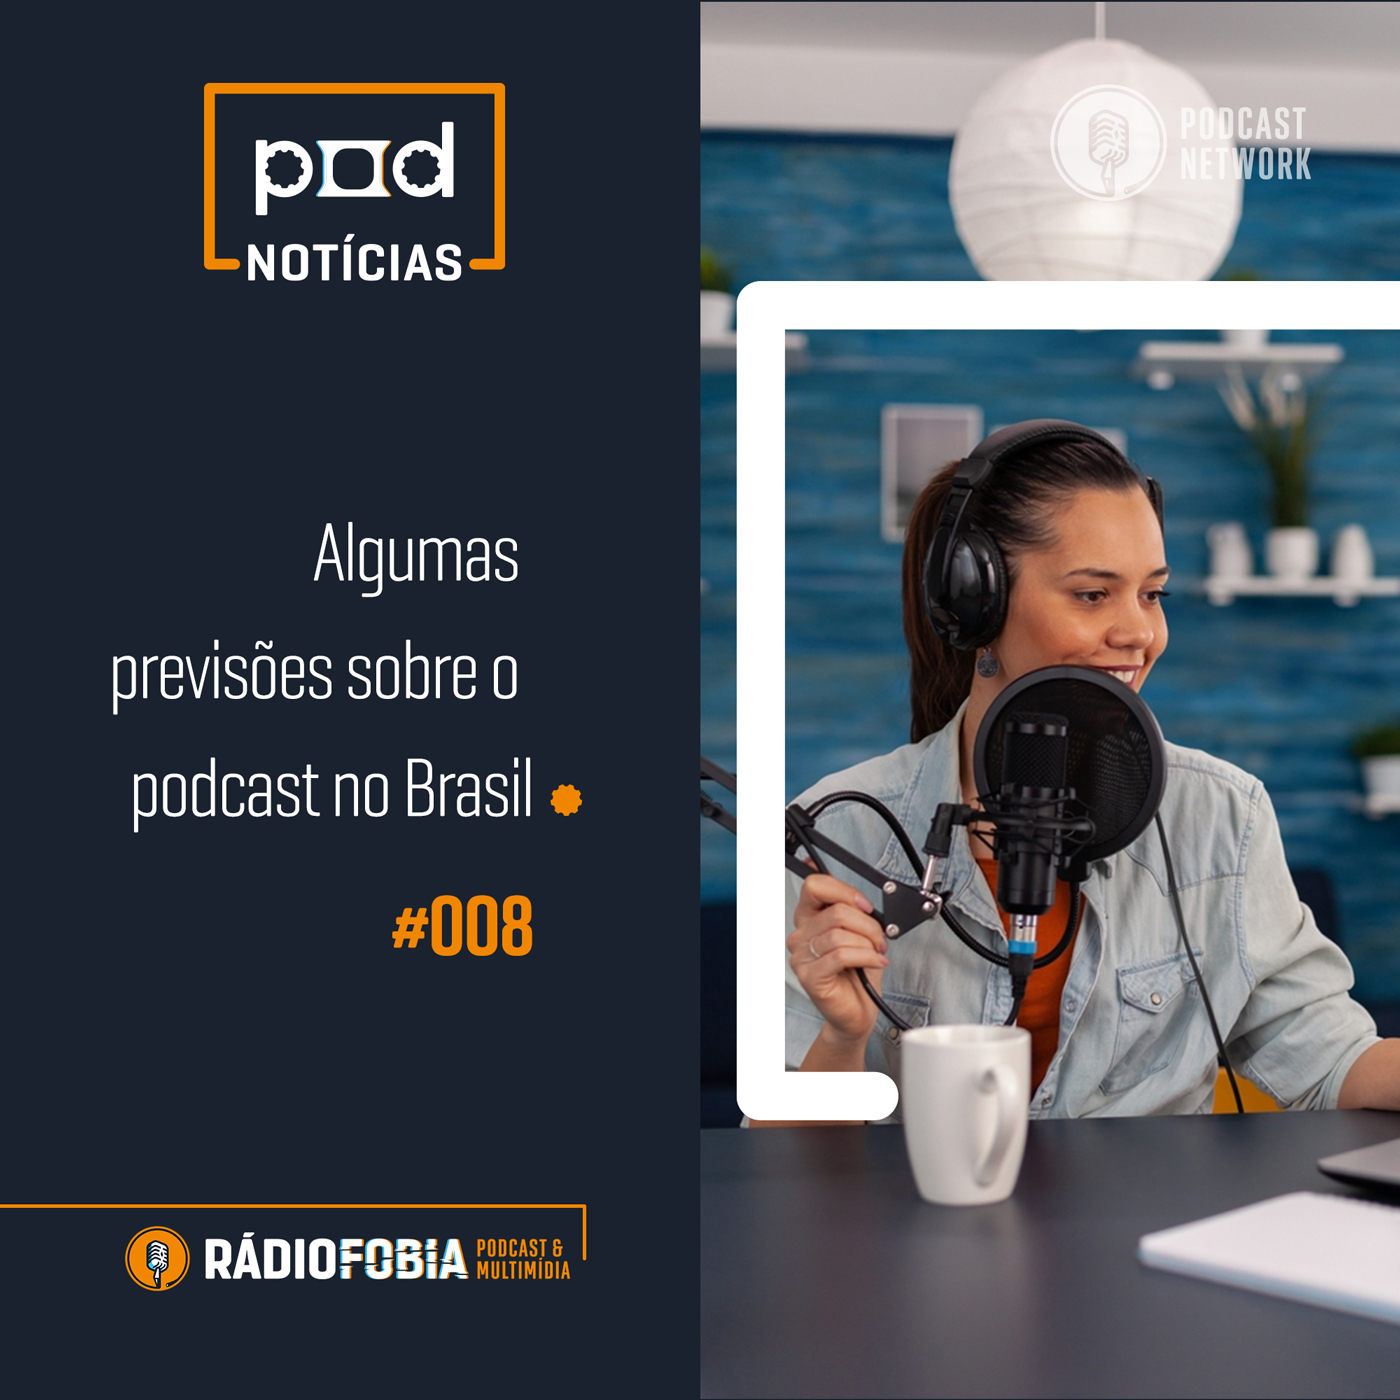 Pod Notícias 008 - Algumas previsões sobre o podcast no Brasil